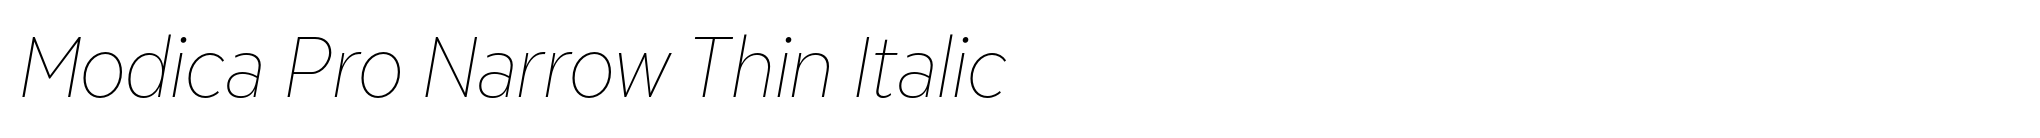 Modica Pro Narrow Thin Italic image